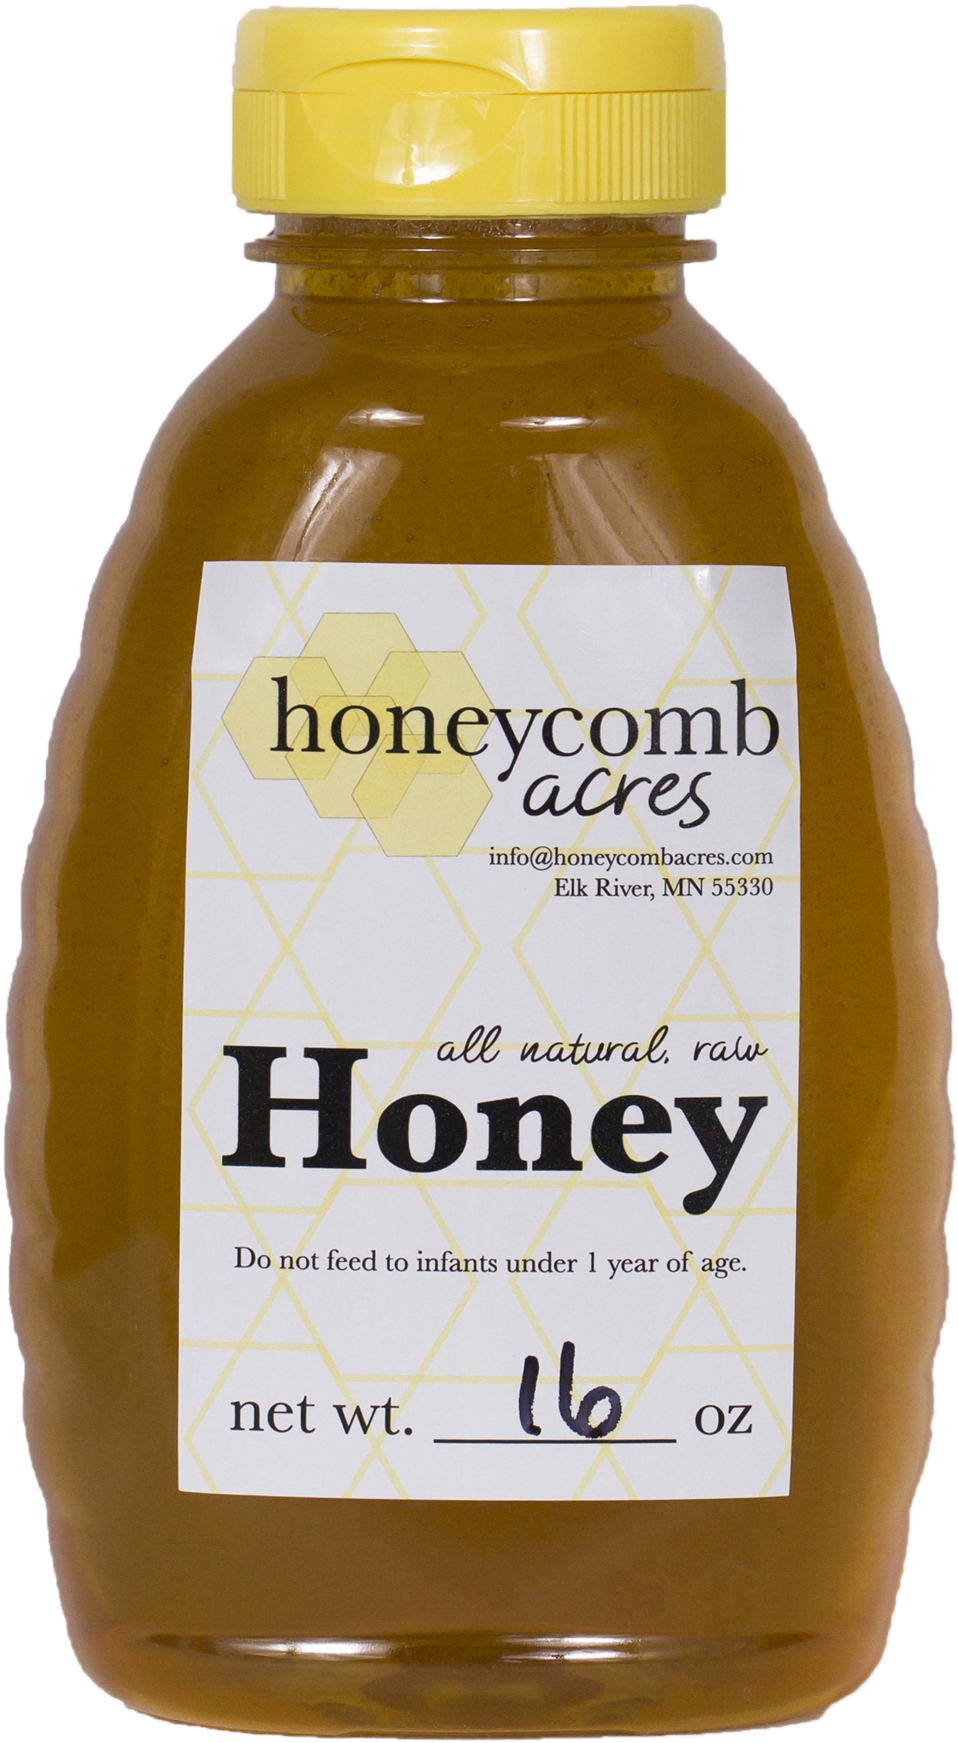 Honey Bottle Free Download Image PNG Image